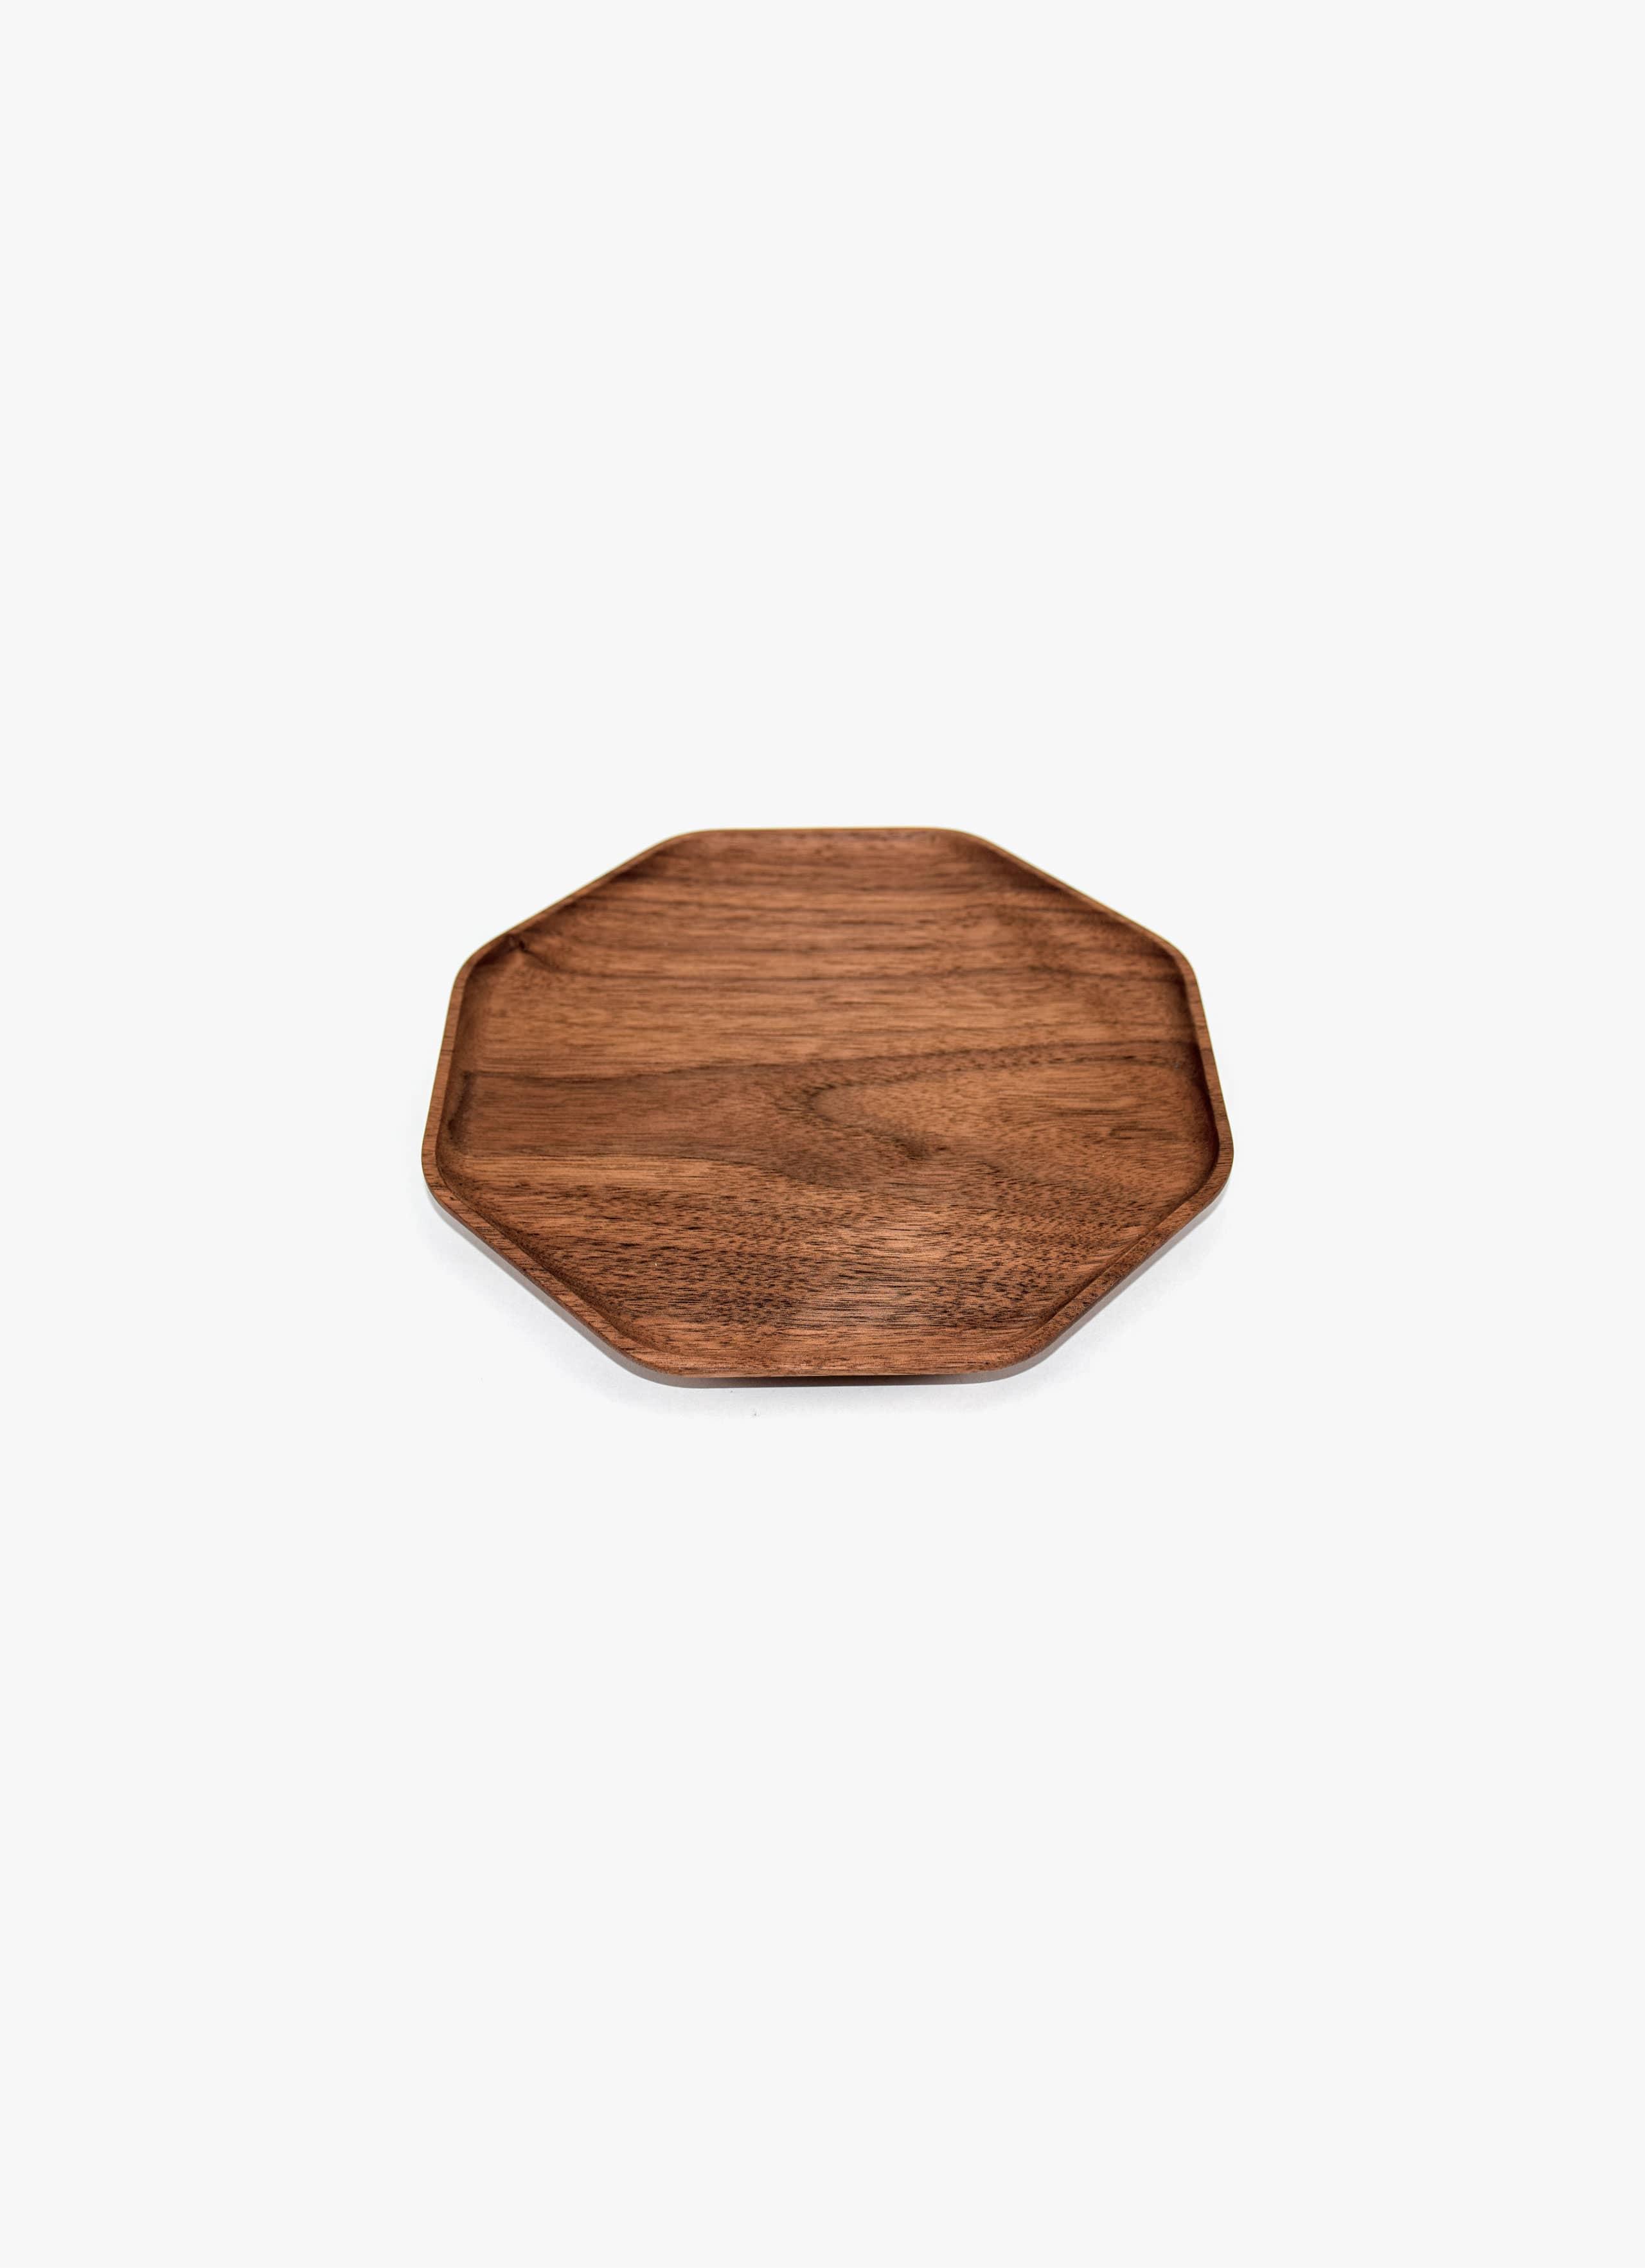 Asahikawa Woodworking - Oji Masanori - Kakudo Plate - Walnut - S